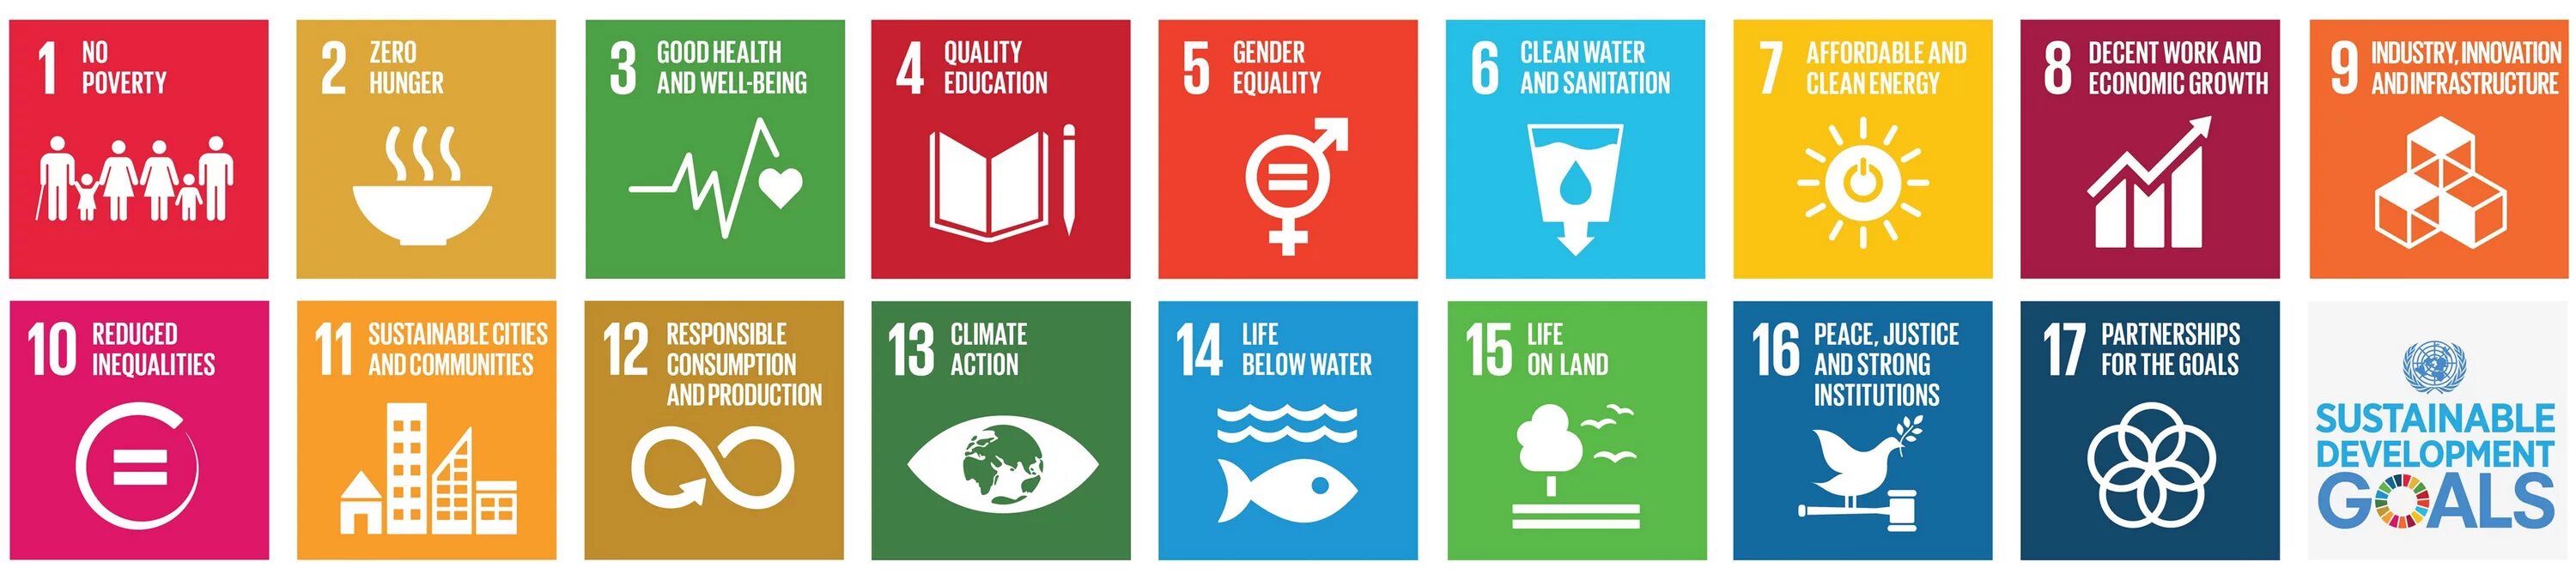 Целей оон в области устойчивого развития. Цели устойчивого развития ООН. ЦУР ООН. SDG цели устойчивого развития. 17 Целей устойчивого развития.